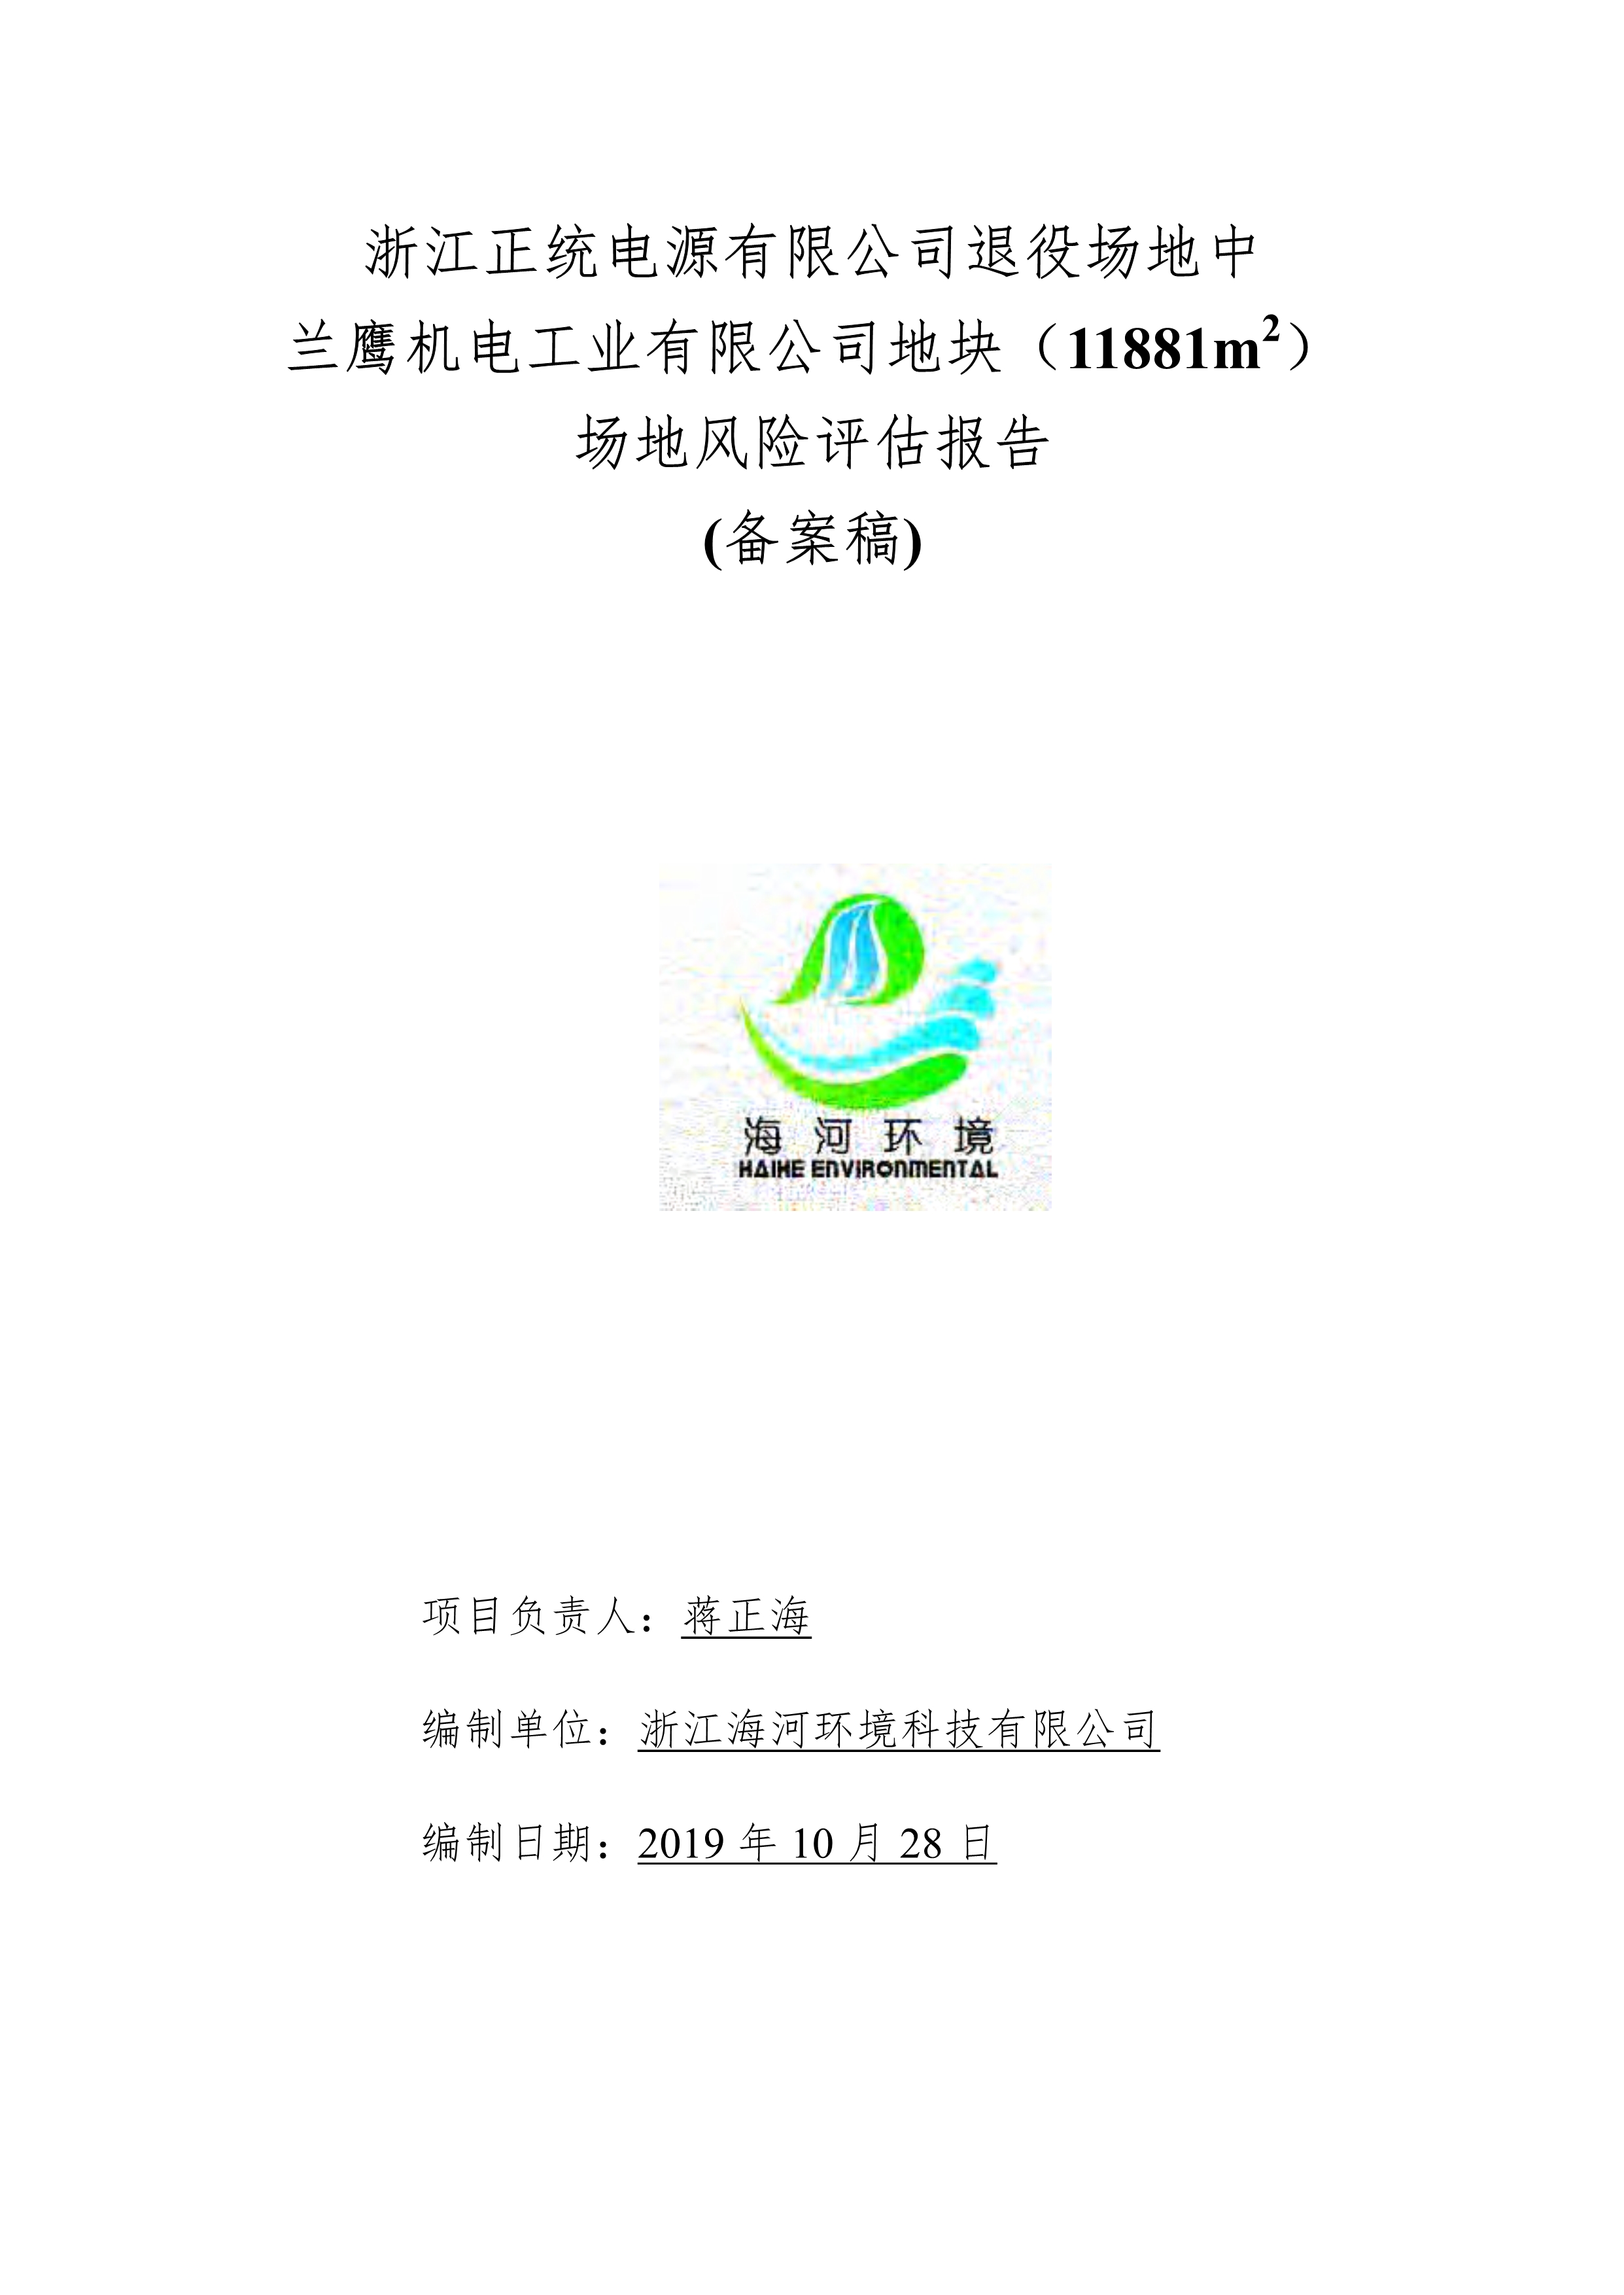 关于浙江正统电源有限公司退役场地中兰鹰机电工业有限公司地块（11881m2）场地风险评估报告公示